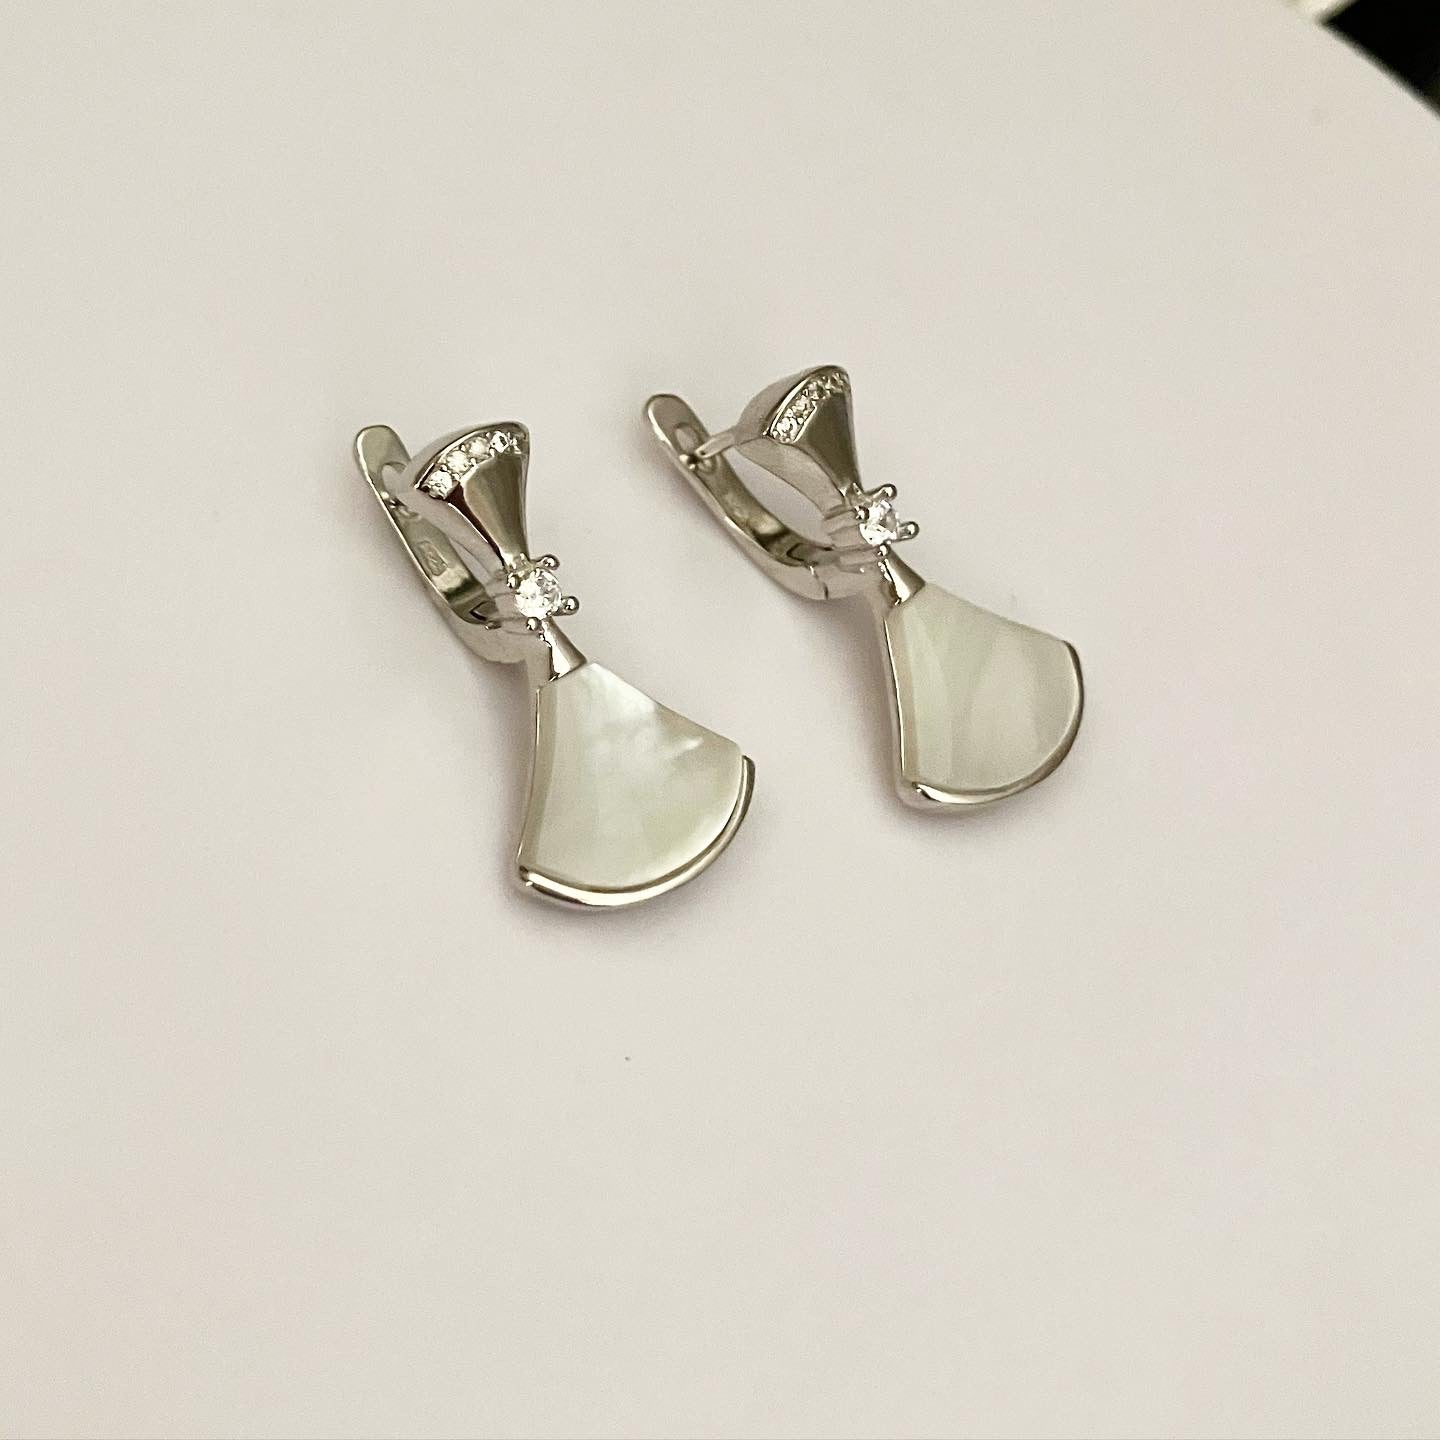 Earrings silver with enamel.